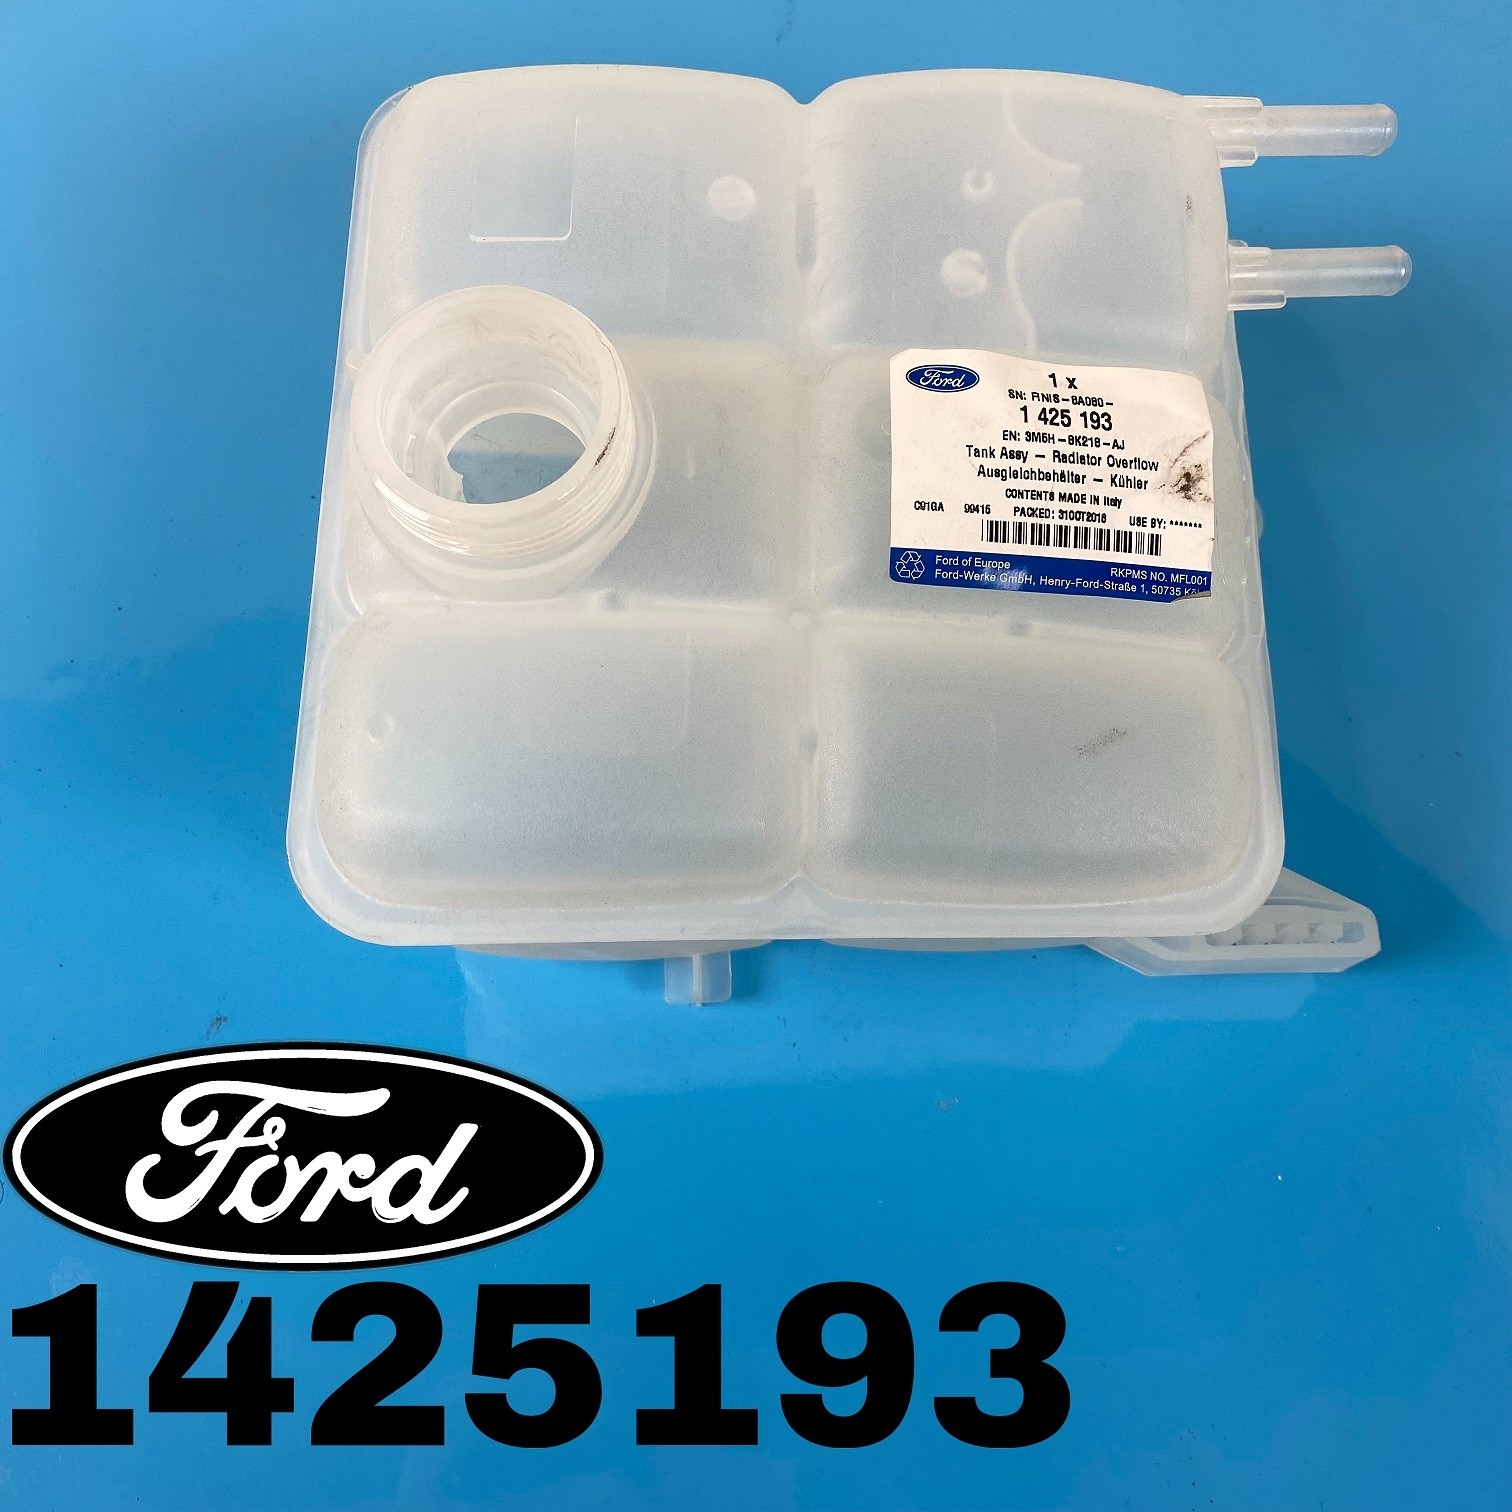 1425193-Ford Original Ausgleichbehälter Kühler Ford Kuga 2.0 TDCi Dieselmotor 2008-2010 Restposten**